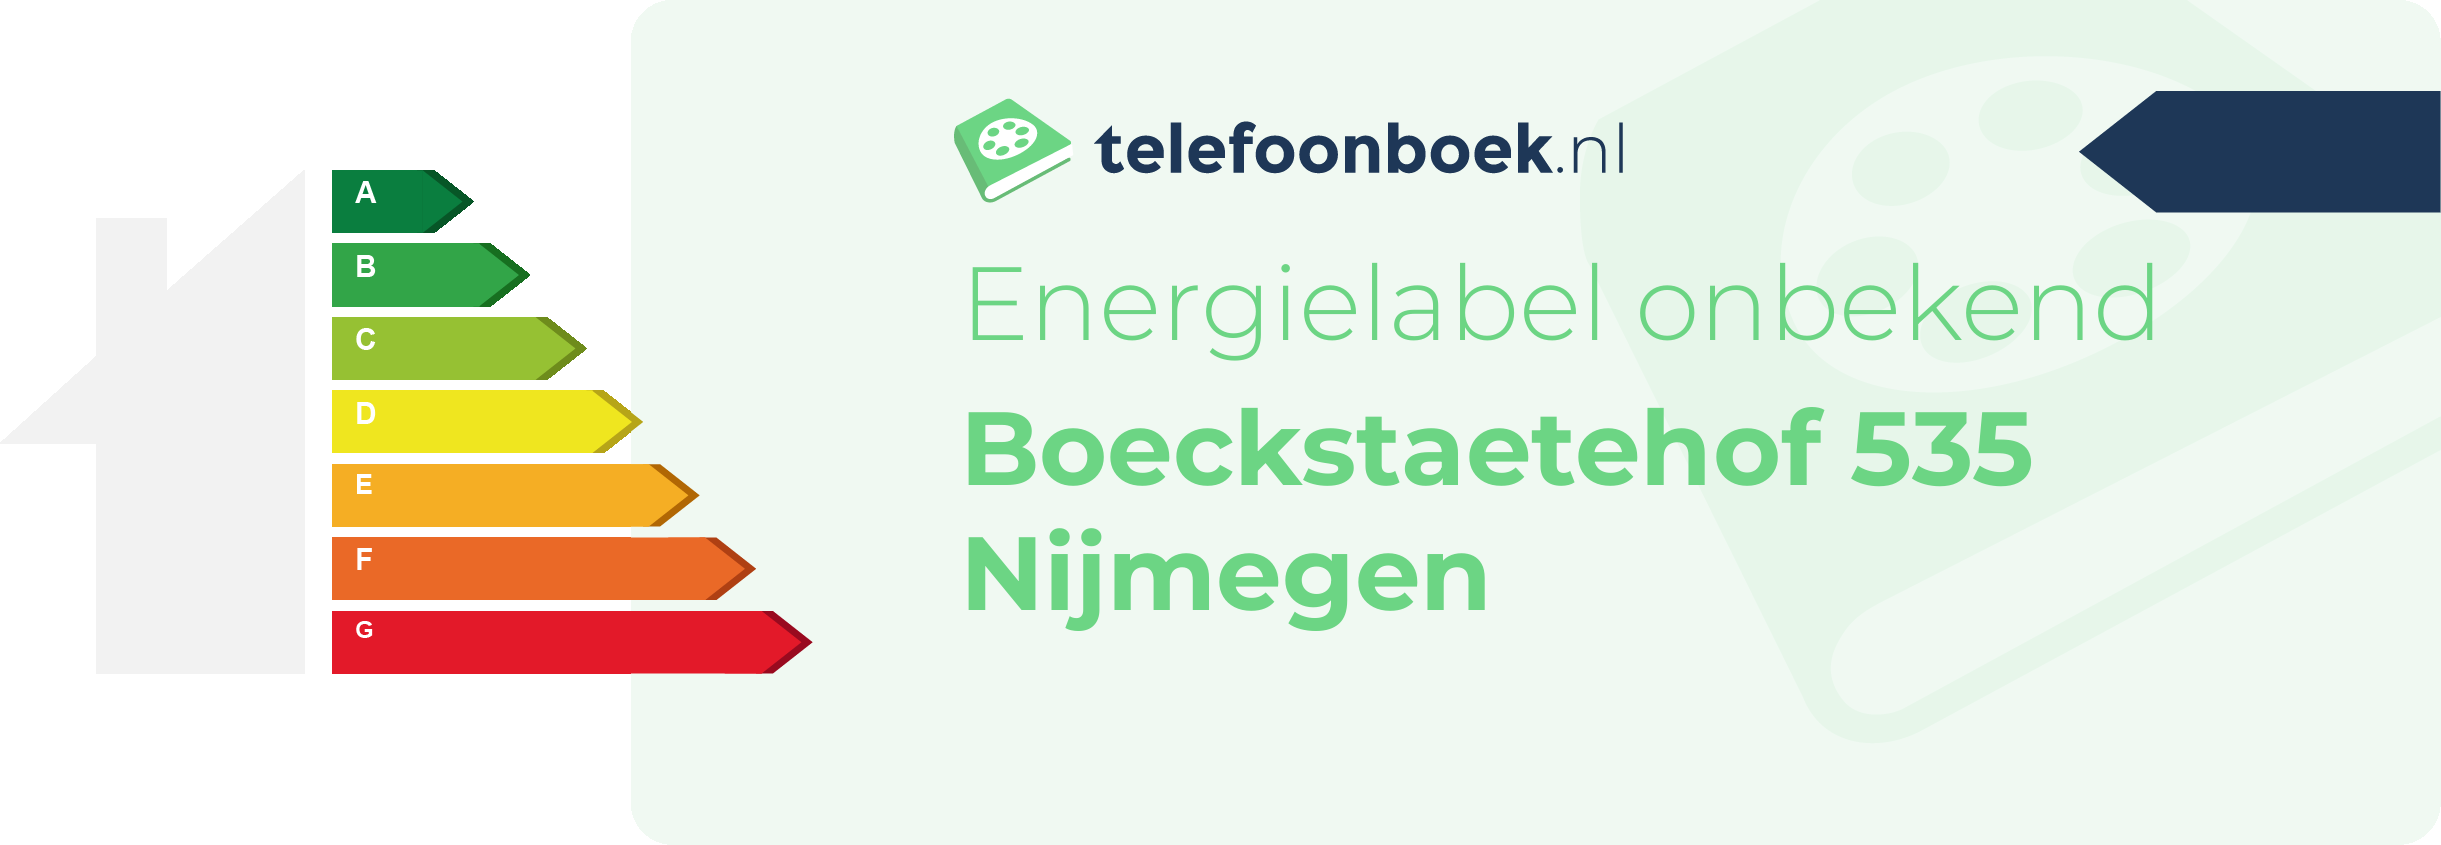 Energielabel Boeckstaetehof 535 Nijmegen